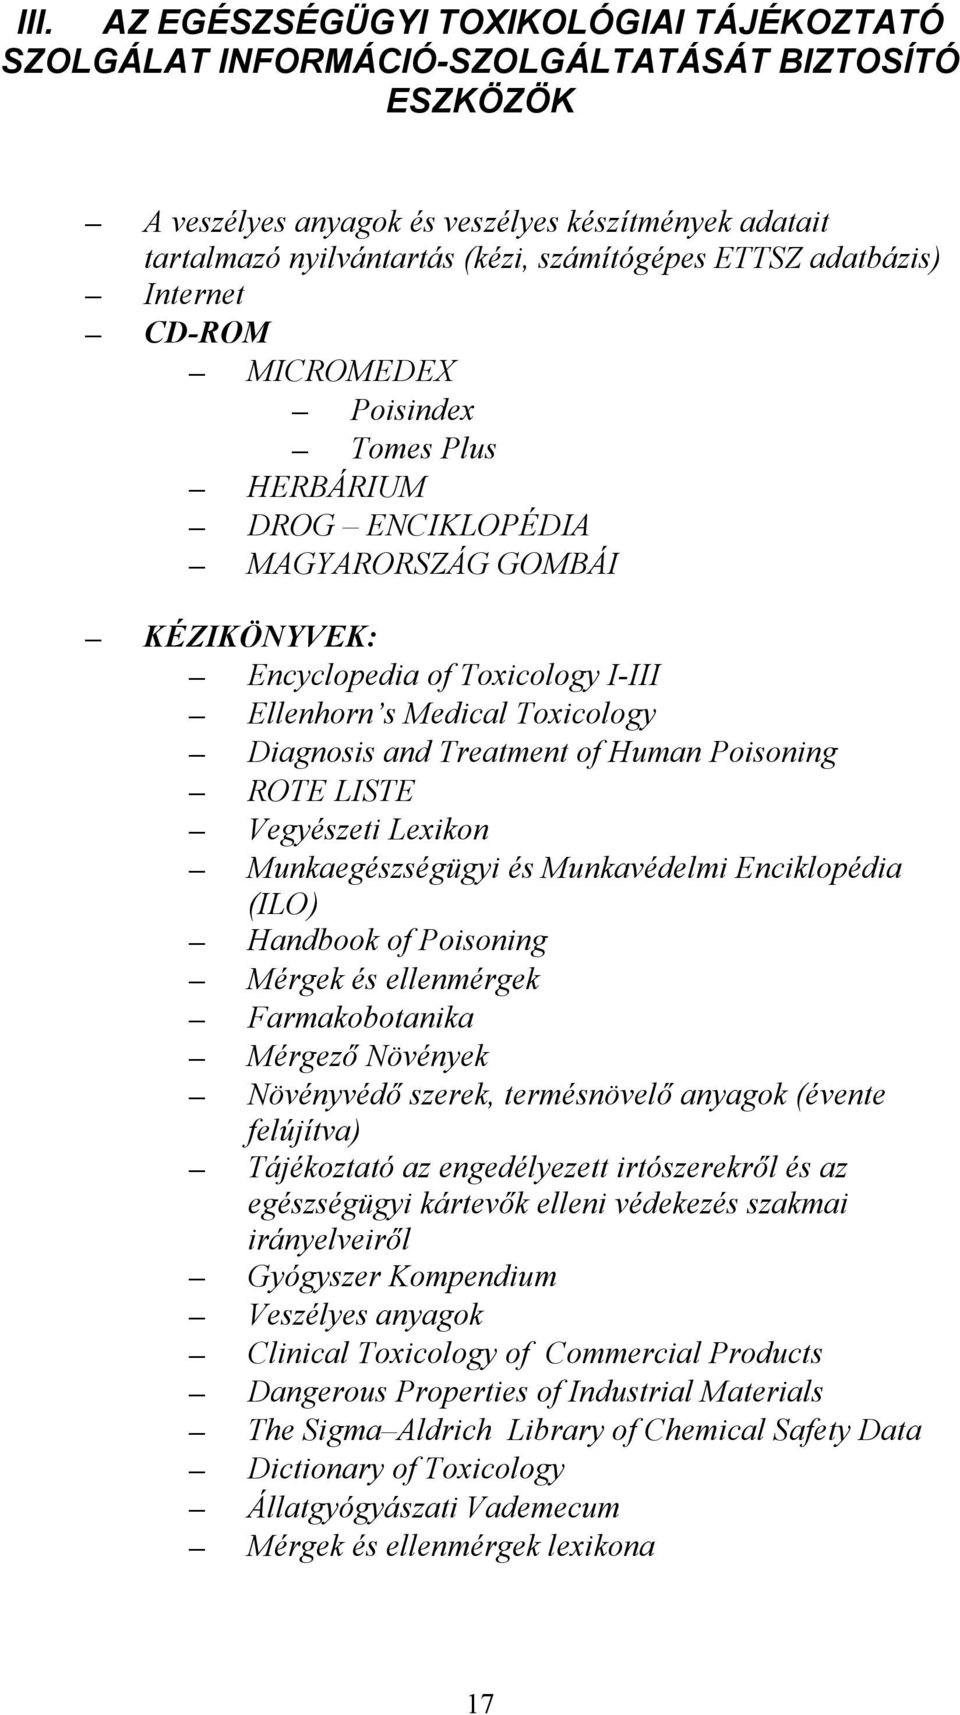 and Treatment of Human Poisoning ROTE LISTE Vegyészeti Lexikon Munkaegészségügyi és Munkavédelmi Enciklopédia (ILO) Handbook of Poisoning Mérgek és ellenmérgek Farmakobotanika Mérgező Növények